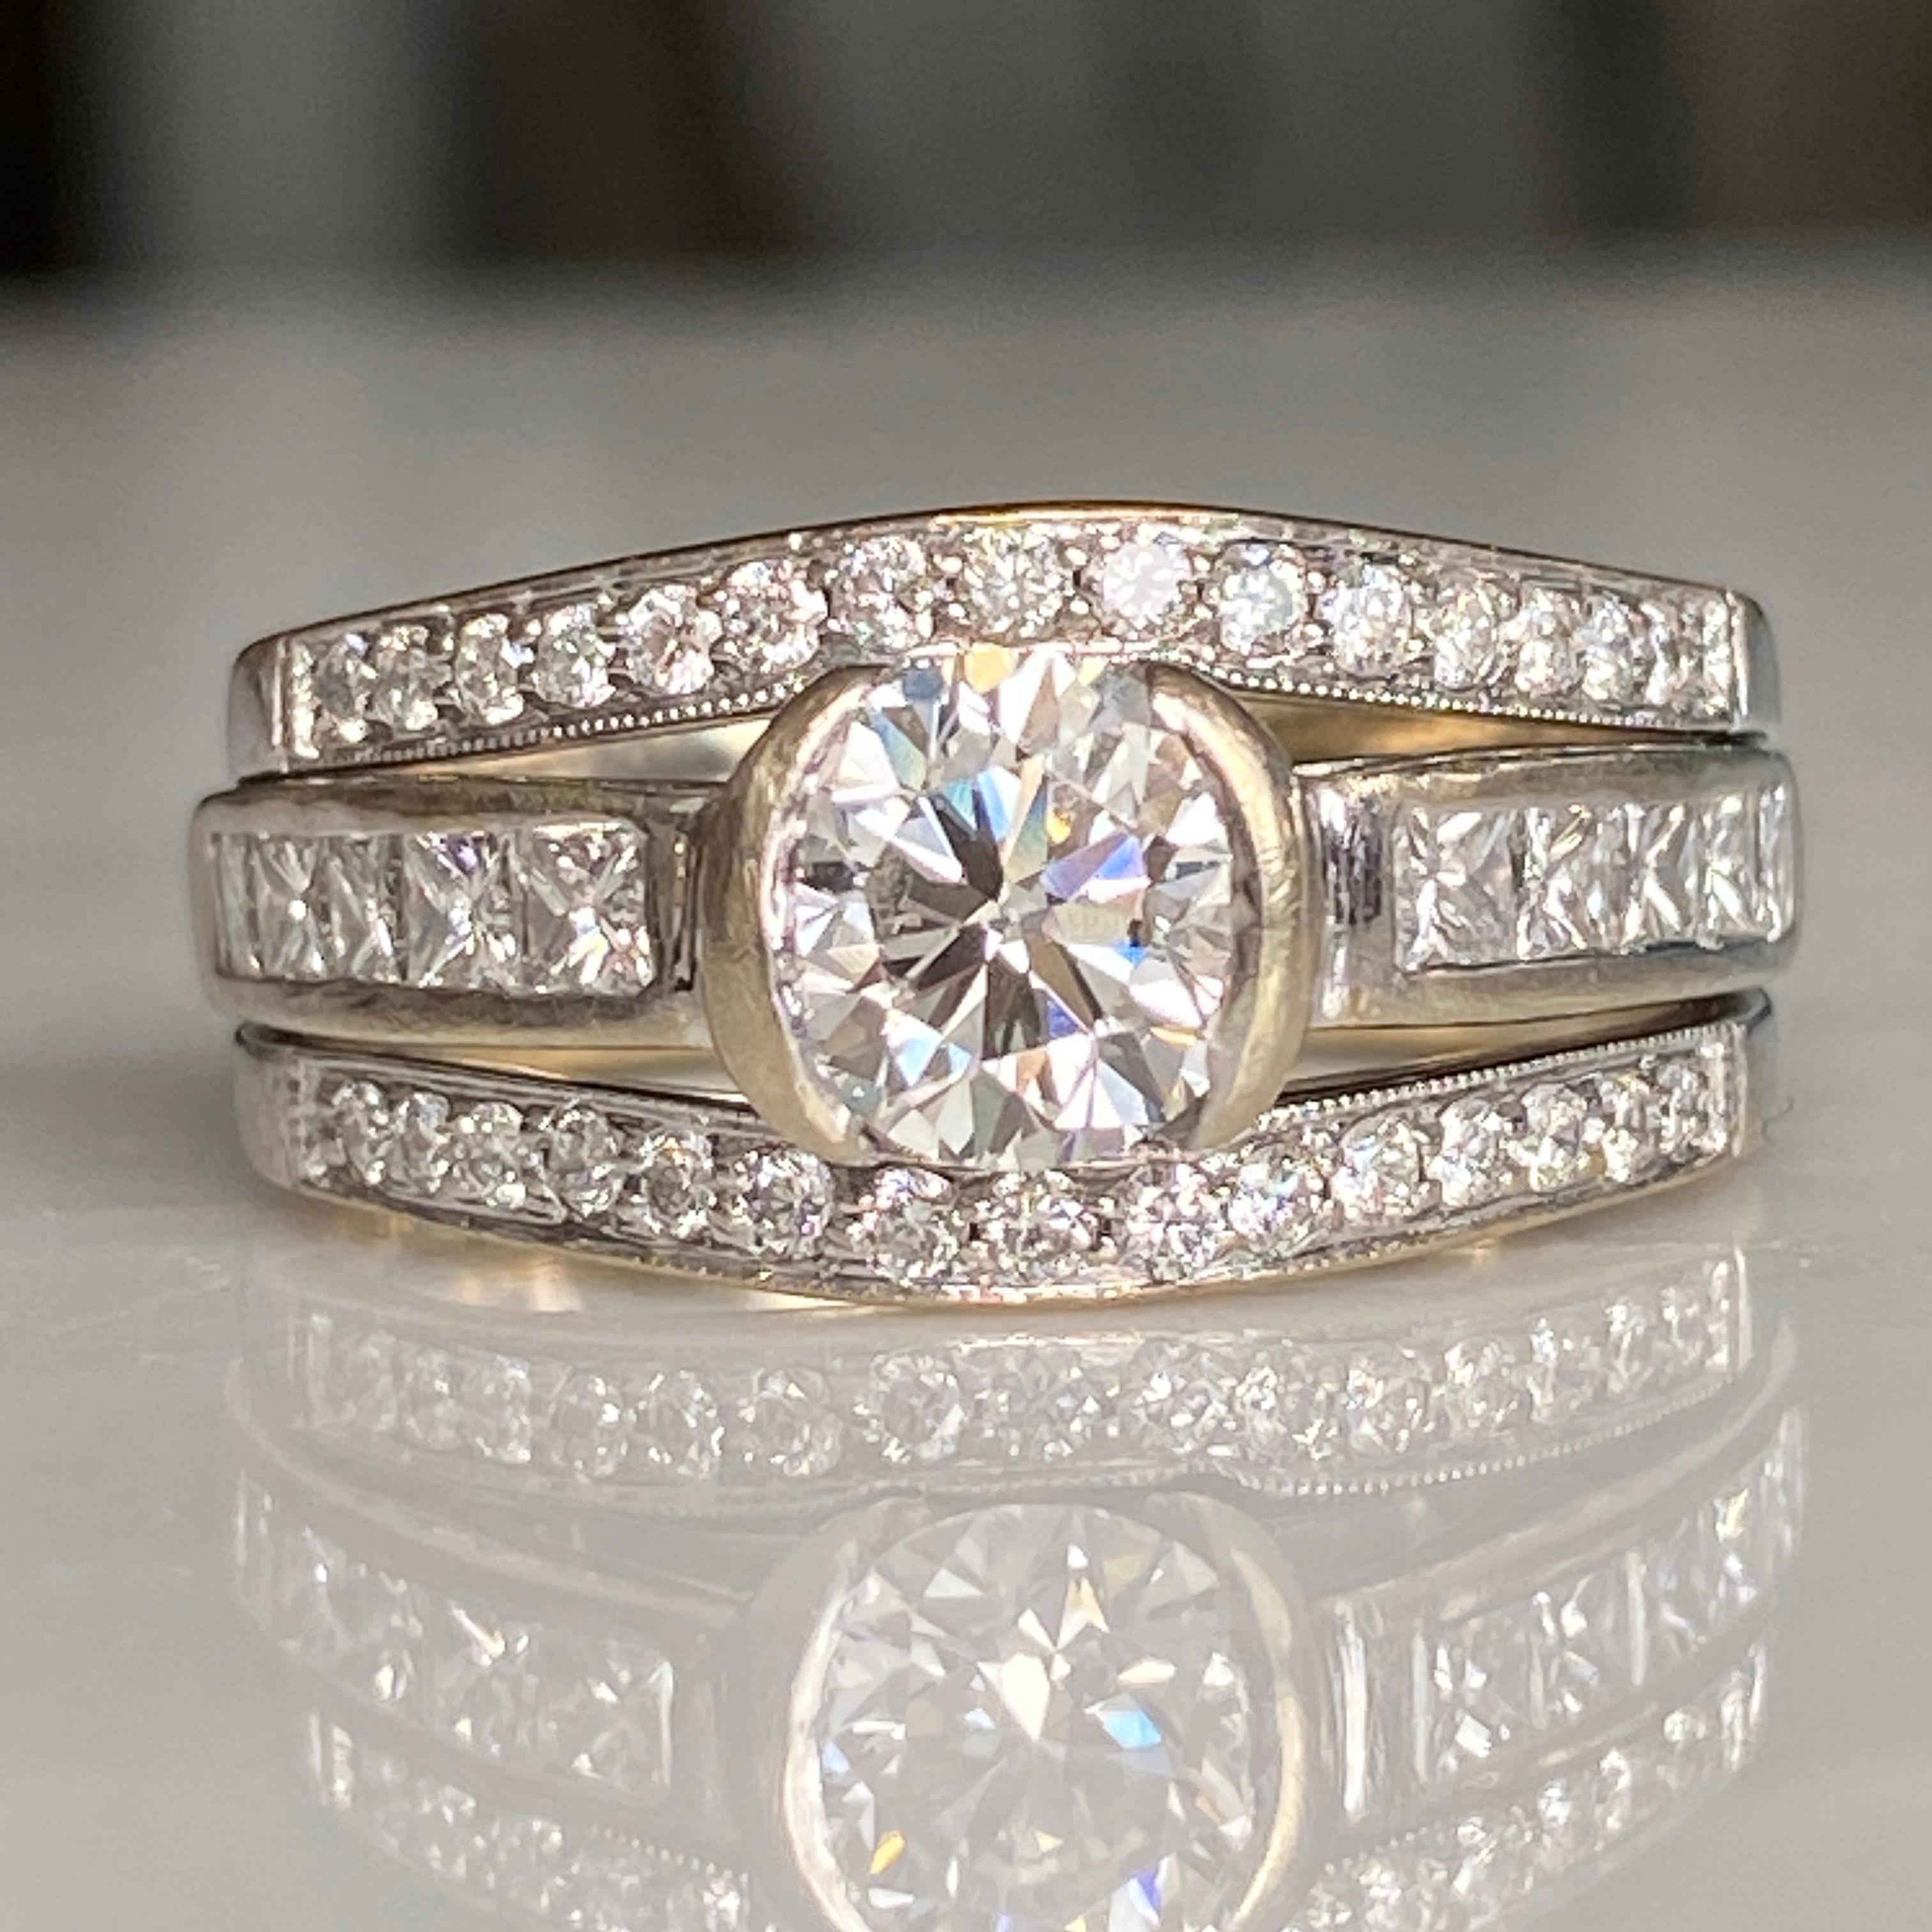 Einzelheiten:
Fabelhafter Diamant-Verlobungsring aus der Mitte des Jahrhunderts mit einem Gesamtgewicht von 1,74 Karat. Dieses Set ist wunderschön und hat jede Menge Glitzer! Es wäre ein fantastisches Hochzeitsset oder sogar ein Upgrade für einen